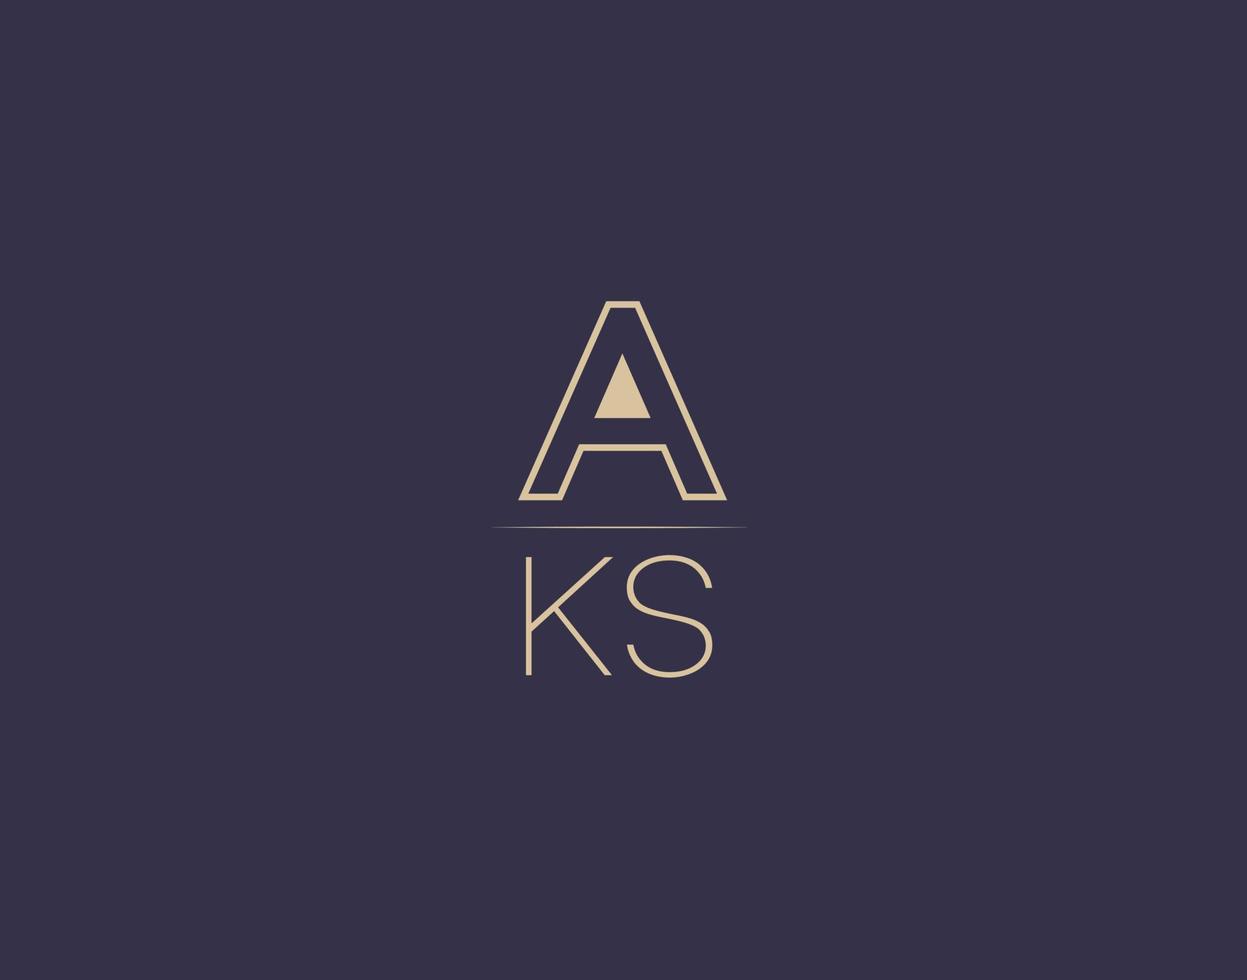 AKS letter logo design modern minimalist vector images